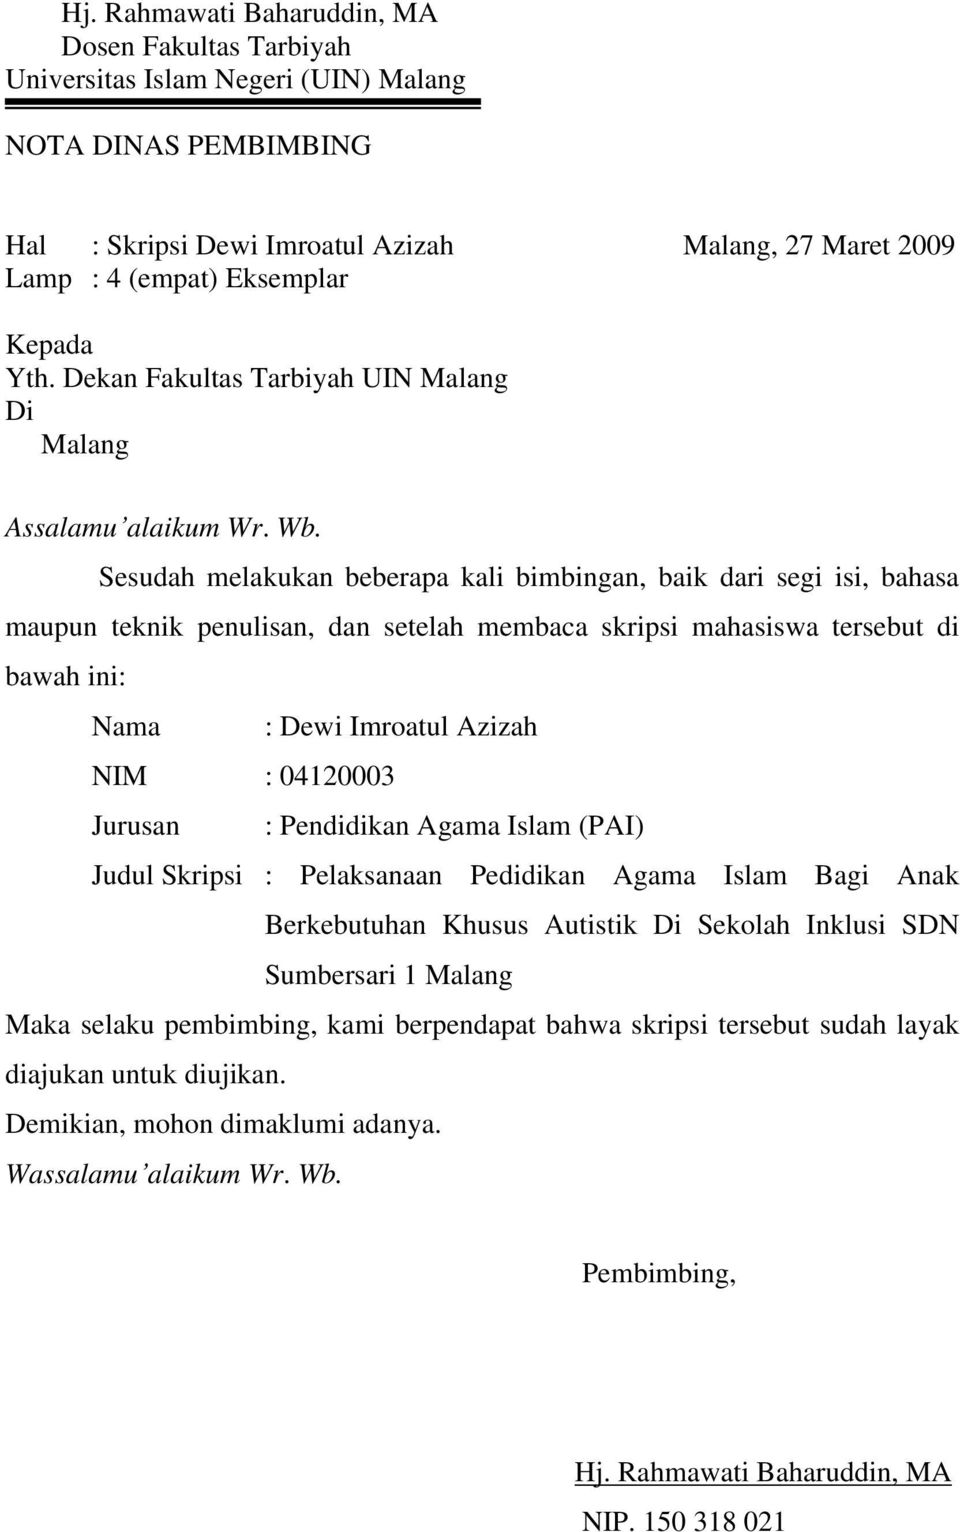 Sesudah melakukan beberapa kali bimbingan, baik dari segi isi, bahasa maupun teknik penulisan, dan setelah membaca skripsi mahasiswa tersebut di bawah ini: Nama : Dewi Imroatul Azizah NIM : 04120003